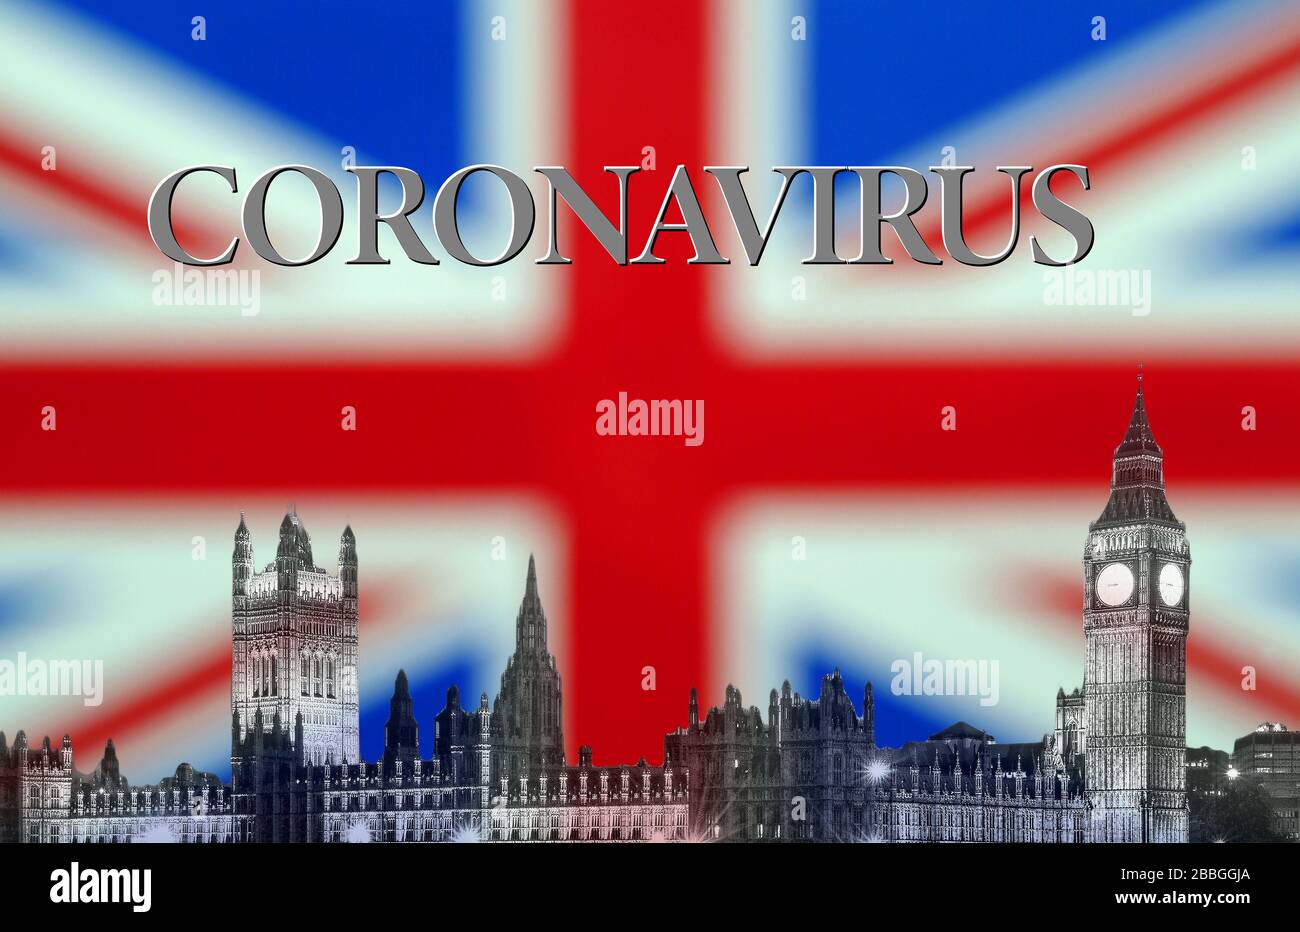 Coronavirus or Covid 19 Outbreak, England UK, Composite with British Union Jack Flag Stock Photo